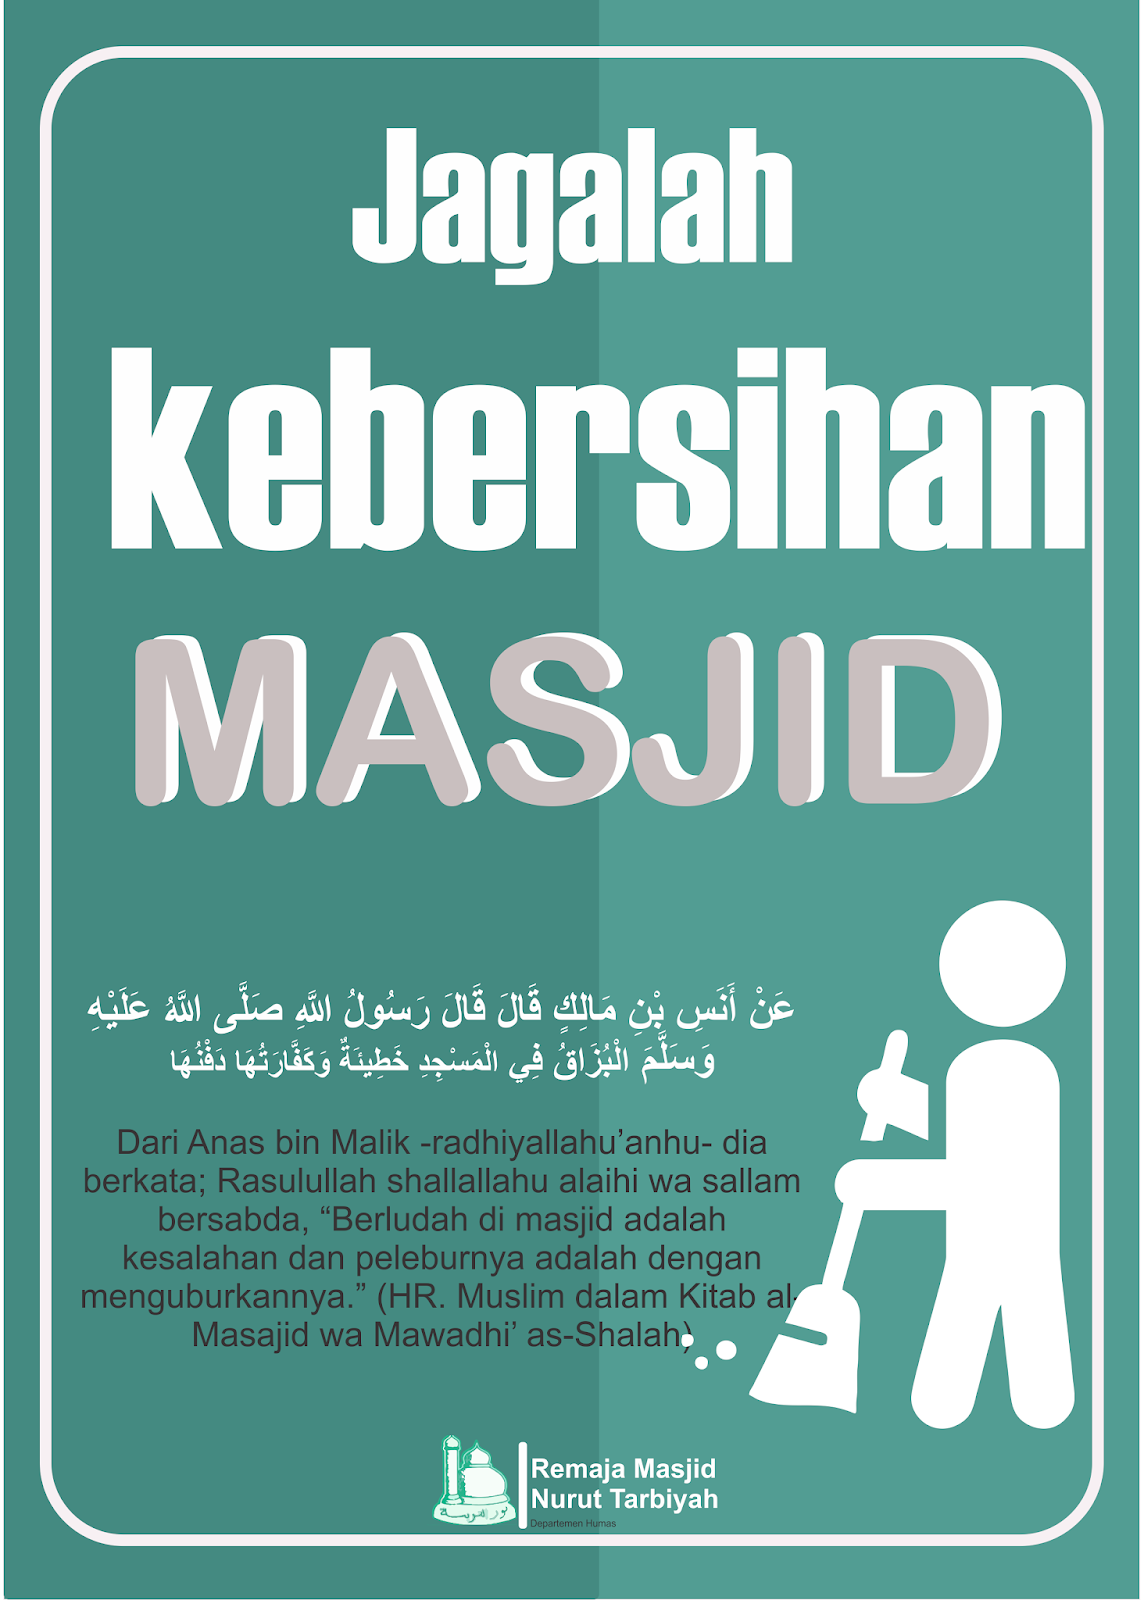 Gagasan Untuk Poster Jagalah Kebersihan Kamar Mandi Koleksi Poster